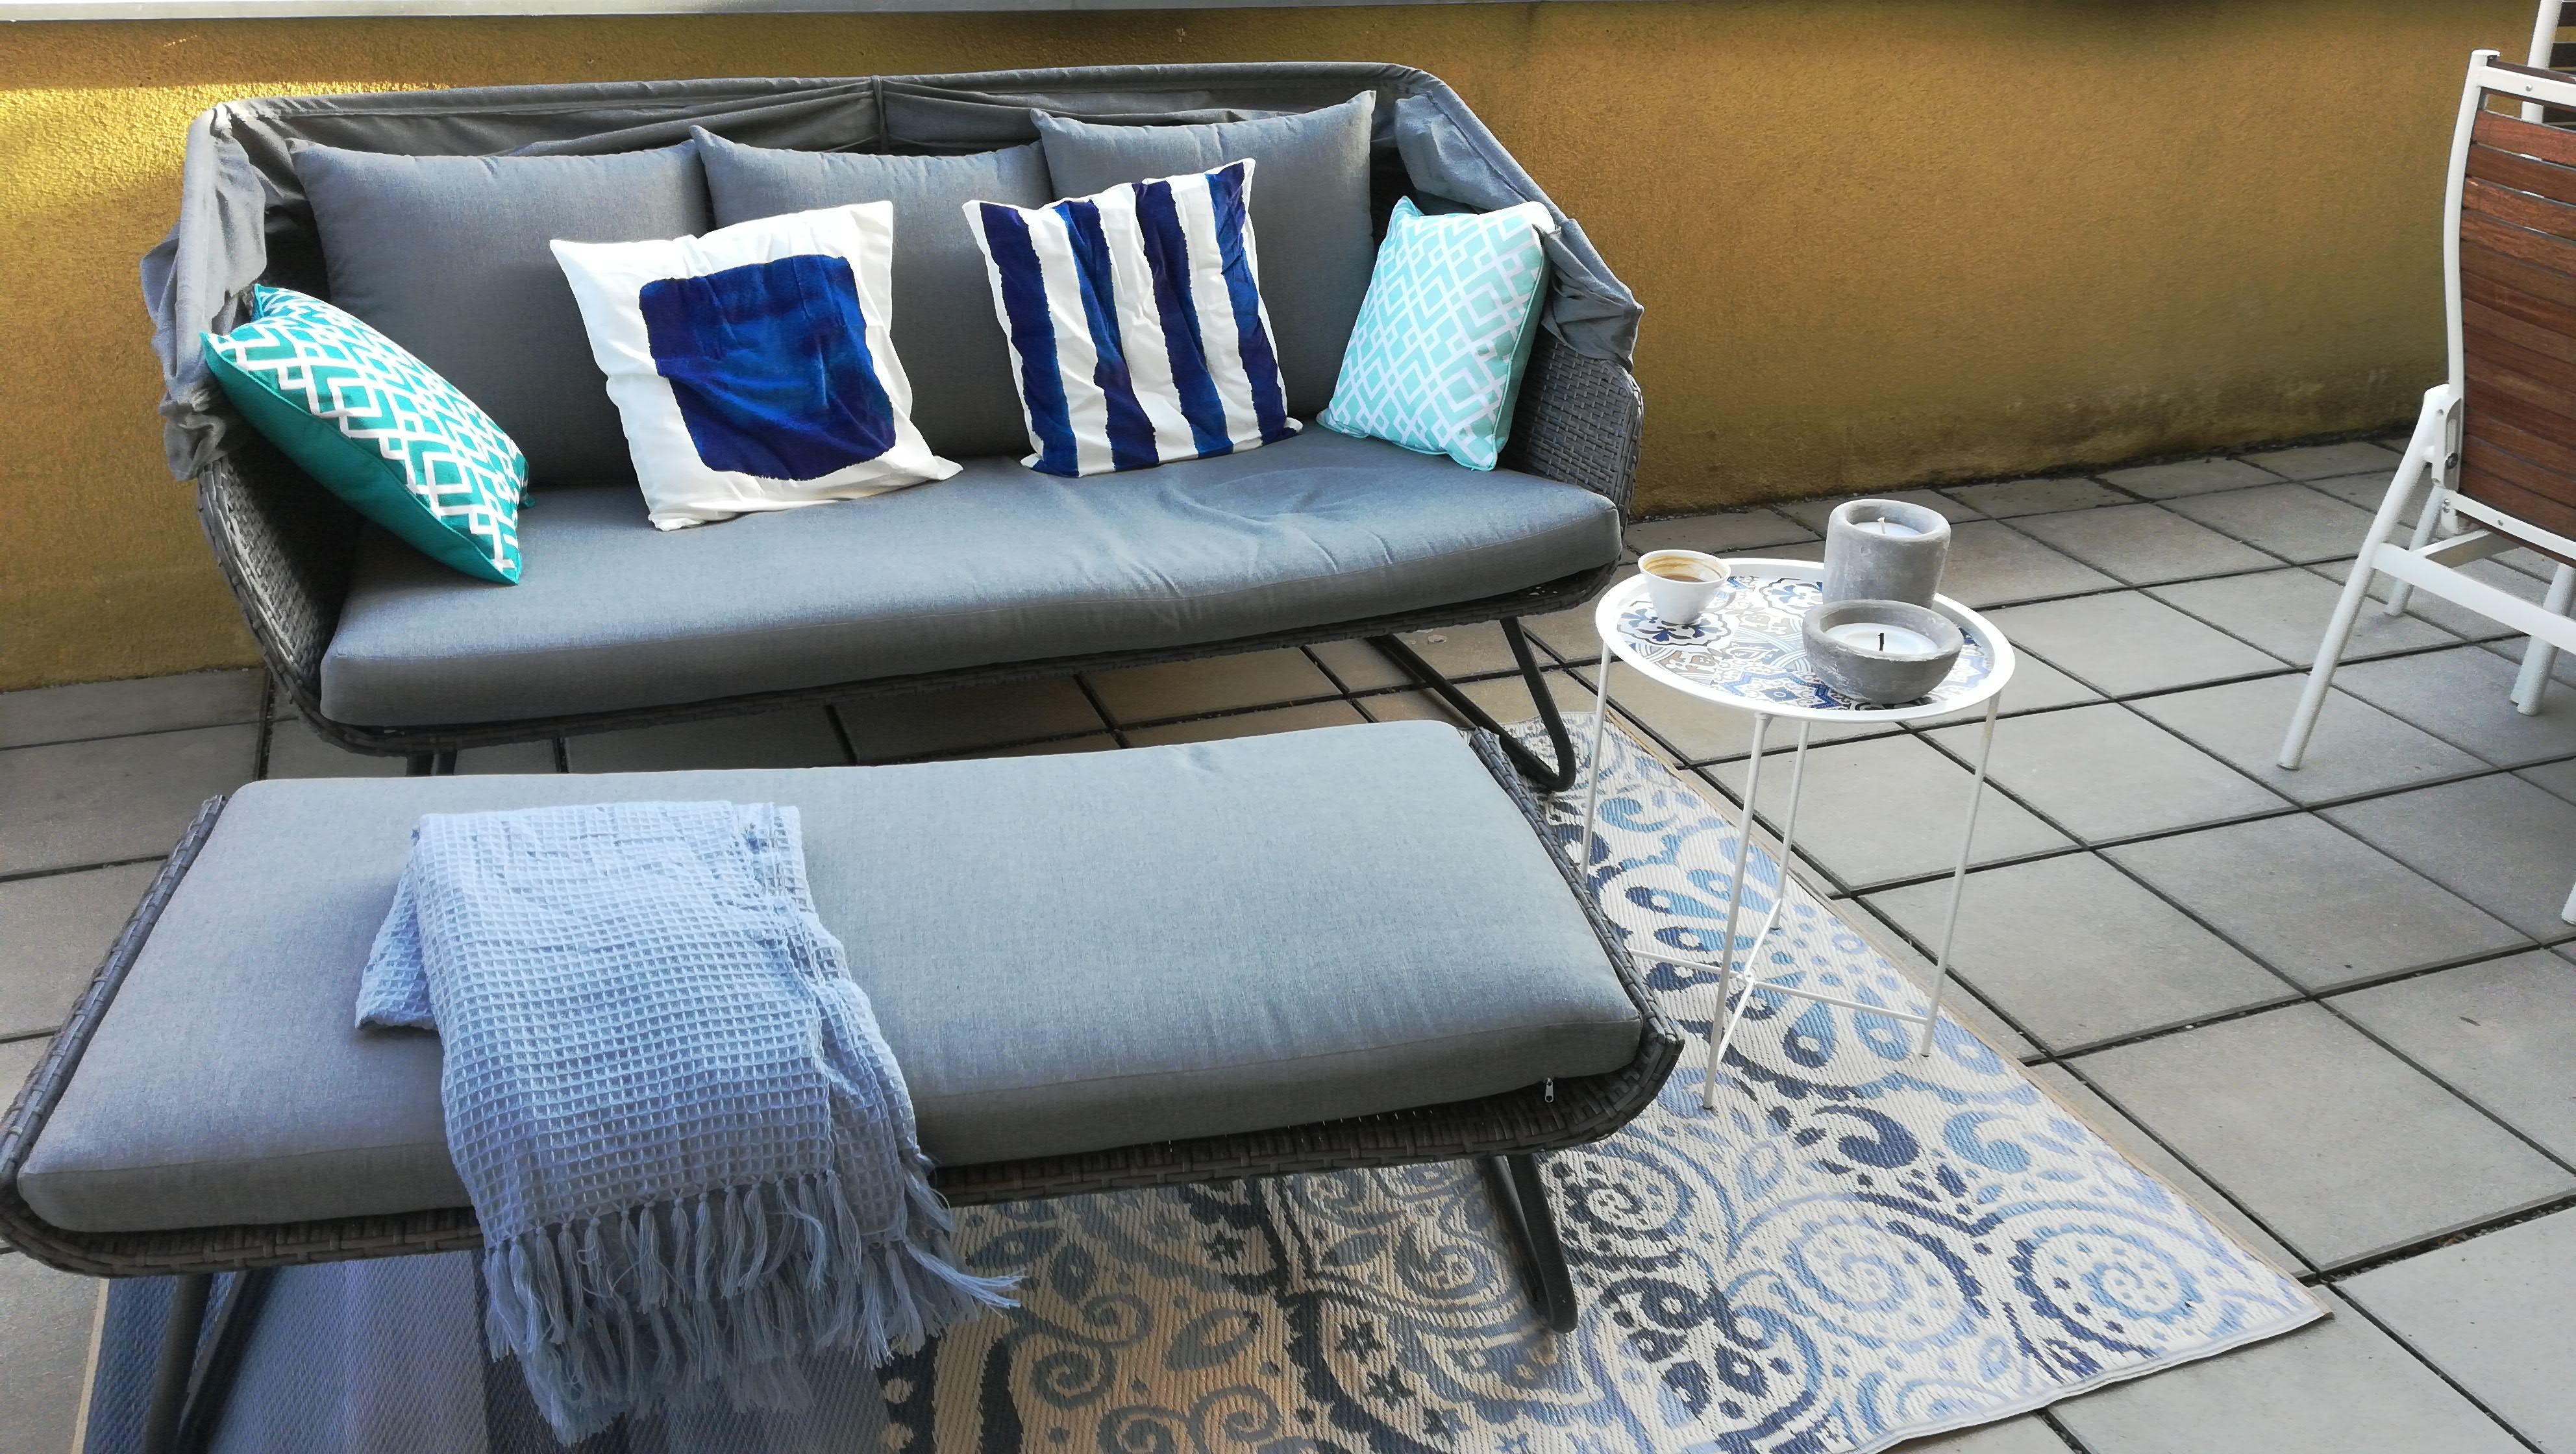 unser Loungesofa mit Sonnendach 🤗

#draußensein #livingchallenge #outdoor #stayathome